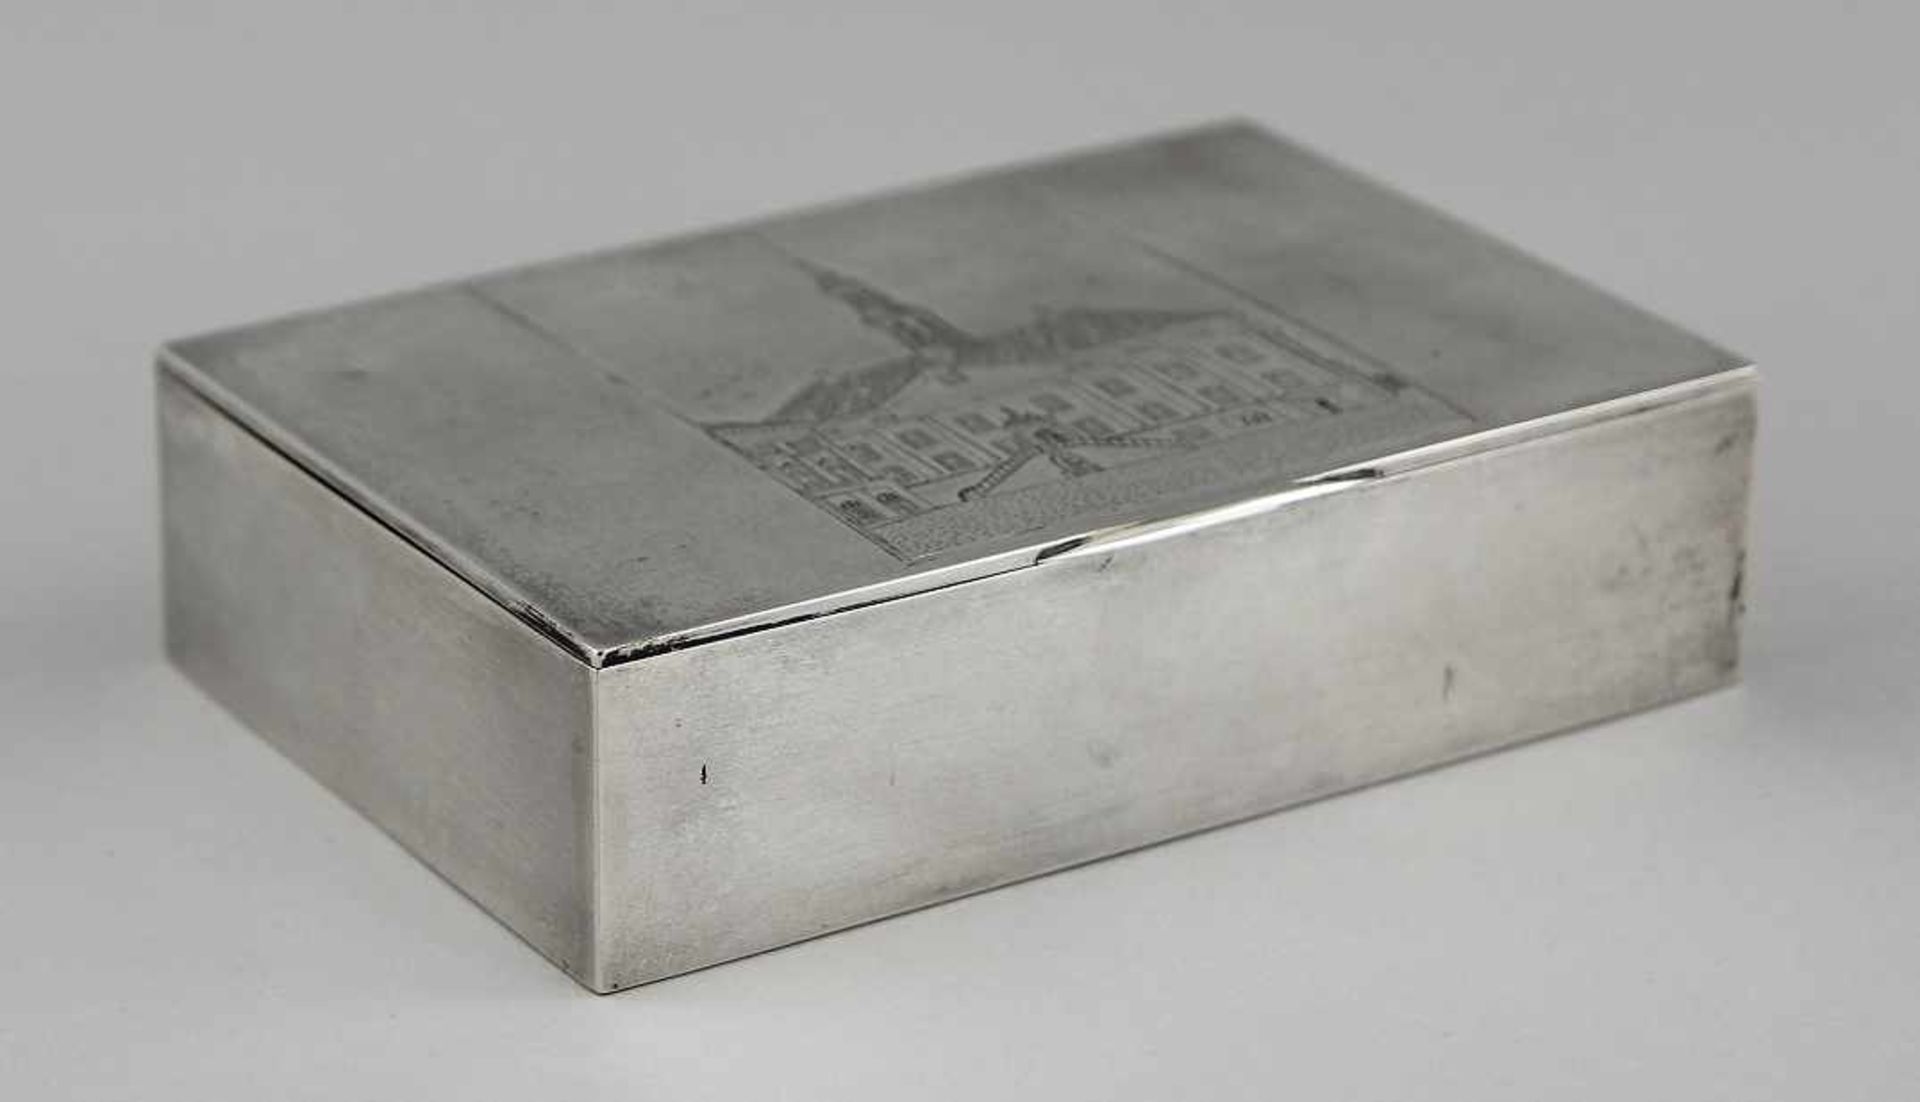 Zigarrenkasten "Narva" Silber 875 getrieben und graviert, rechteckiger Kasten mit flachem